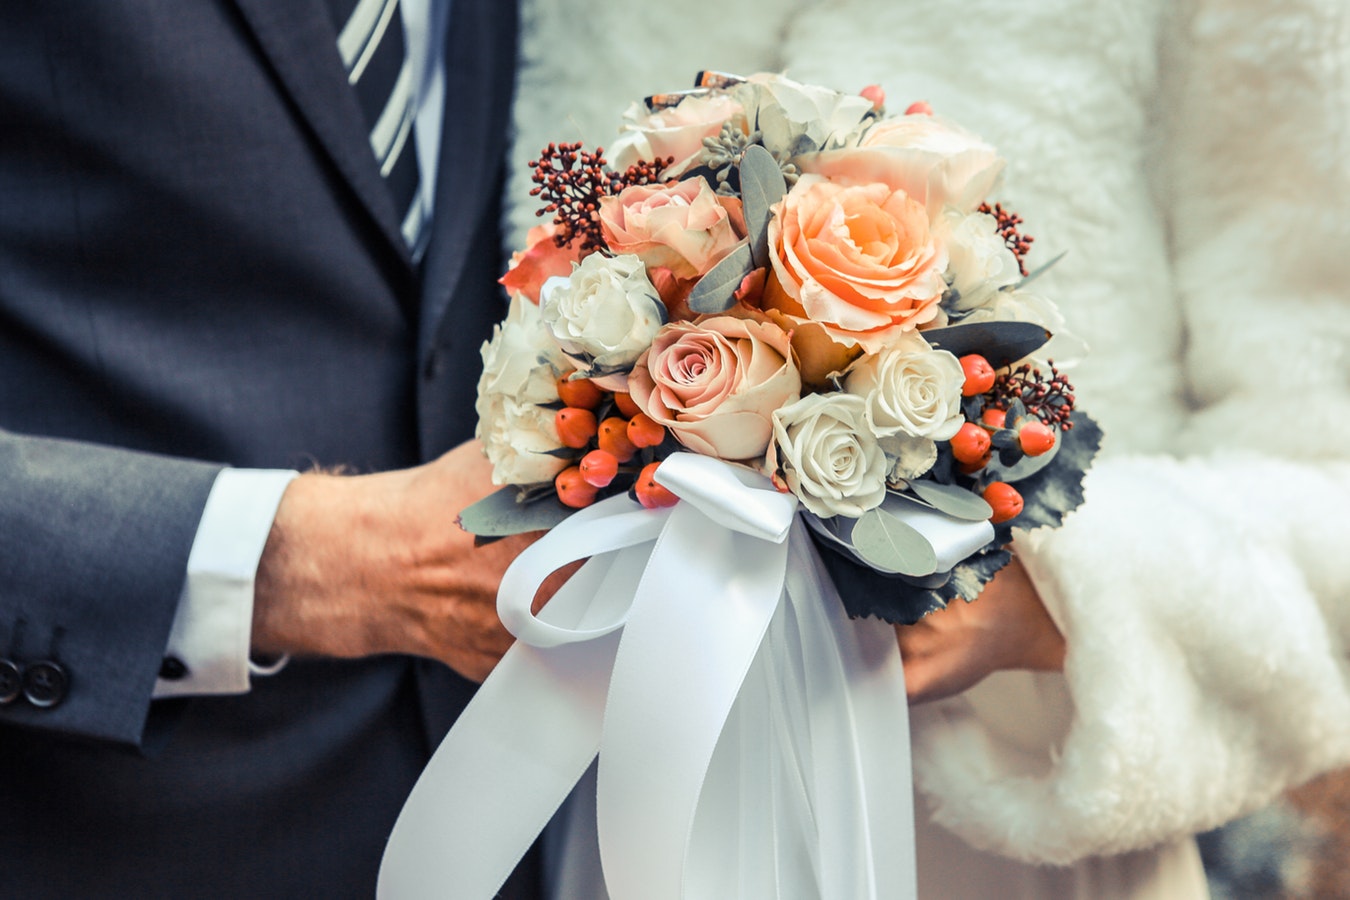 Matrimonio in autunno: fiori e decorazioni a tema [FOTO]